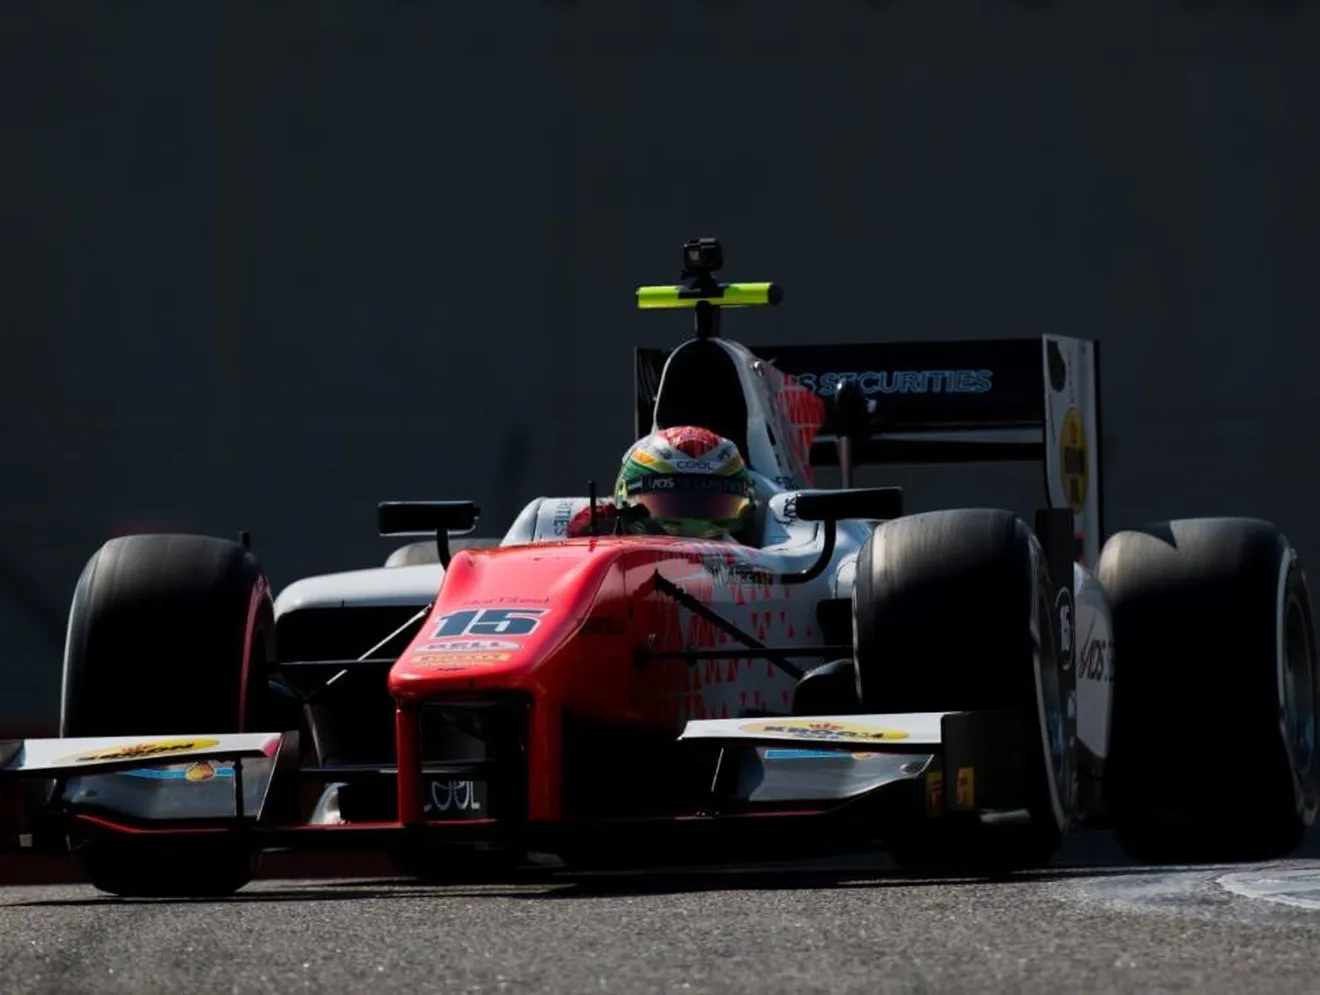 MP Motorsport domina el primer día de test con Louis Delétraz y Niko Kari